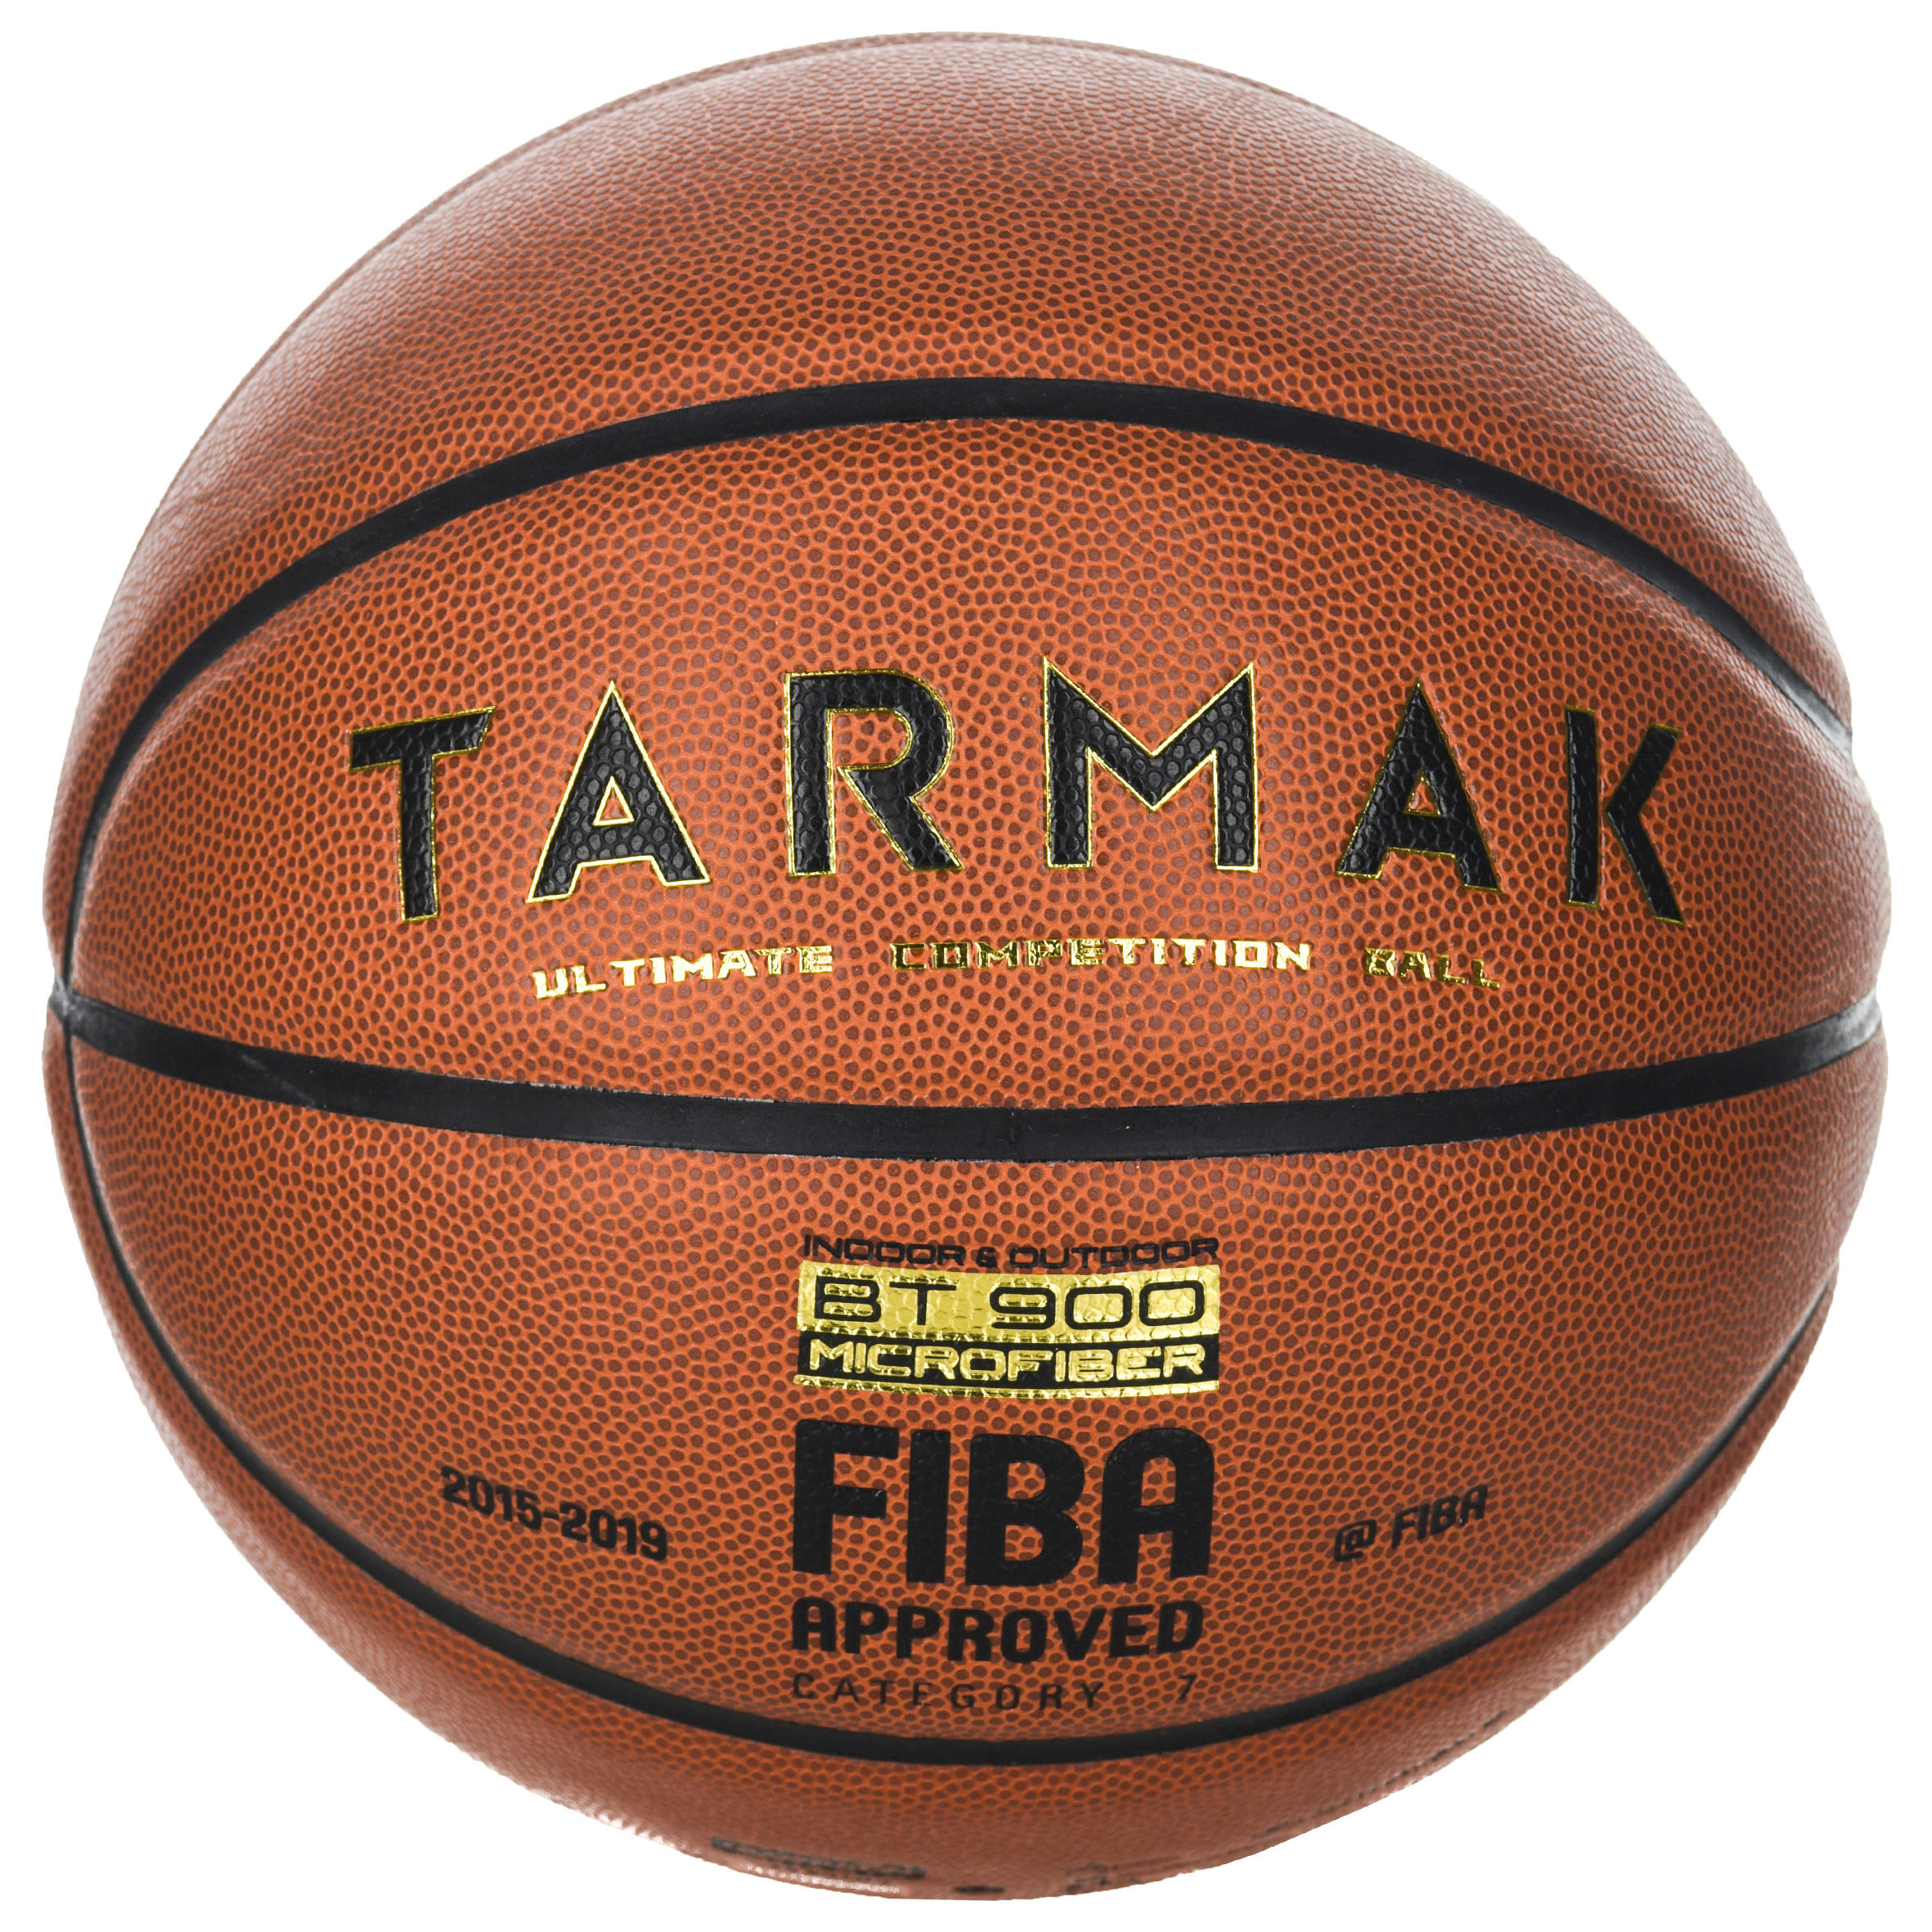 ลูกบาสเก็ตบอลเบอร์ 7 ที่ผ่านการรับรองโดย FIBA สำหรับเด็กและผู้ใหญ่รุ่น BT900 basketball บาสเก็ตบอล โปรโมชั่นสุดคุ้ม